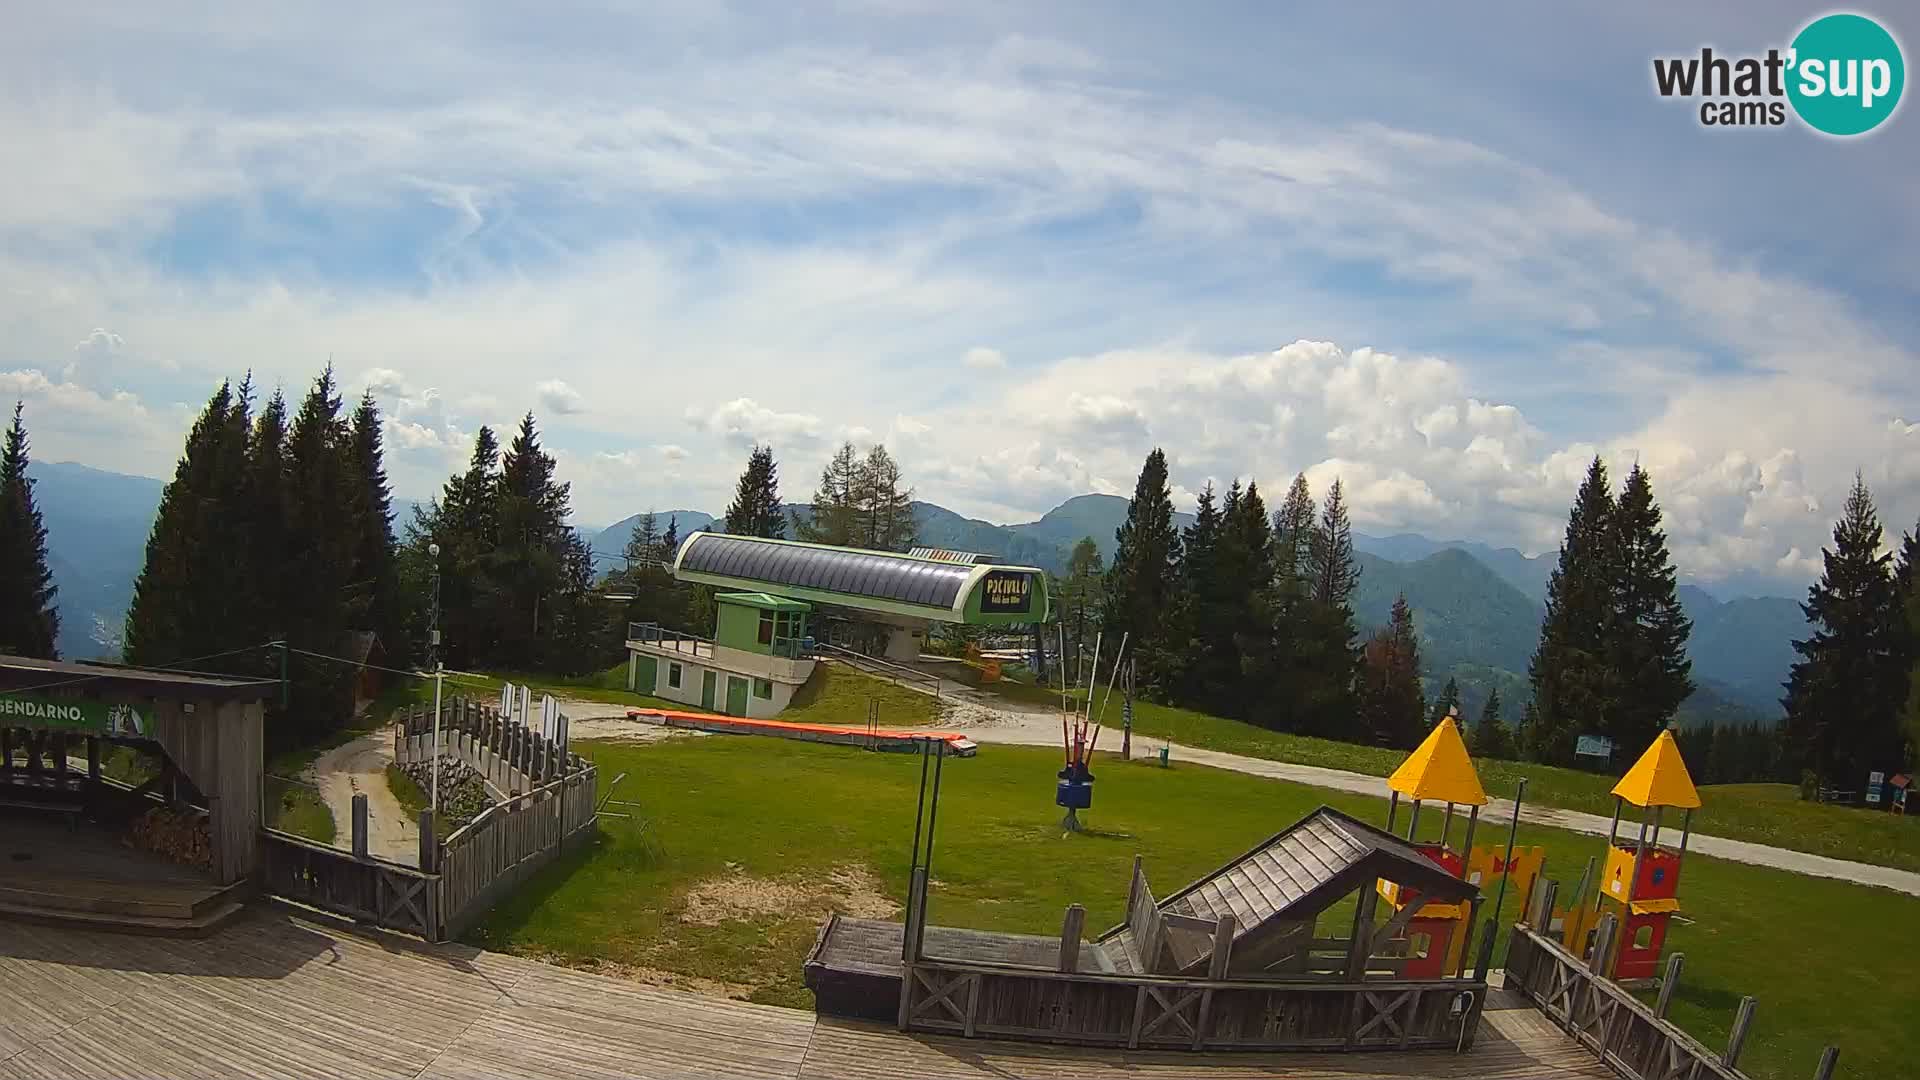 Alpska Perla Skizentrum Cerkno Počivalo Webcam – Slowenien